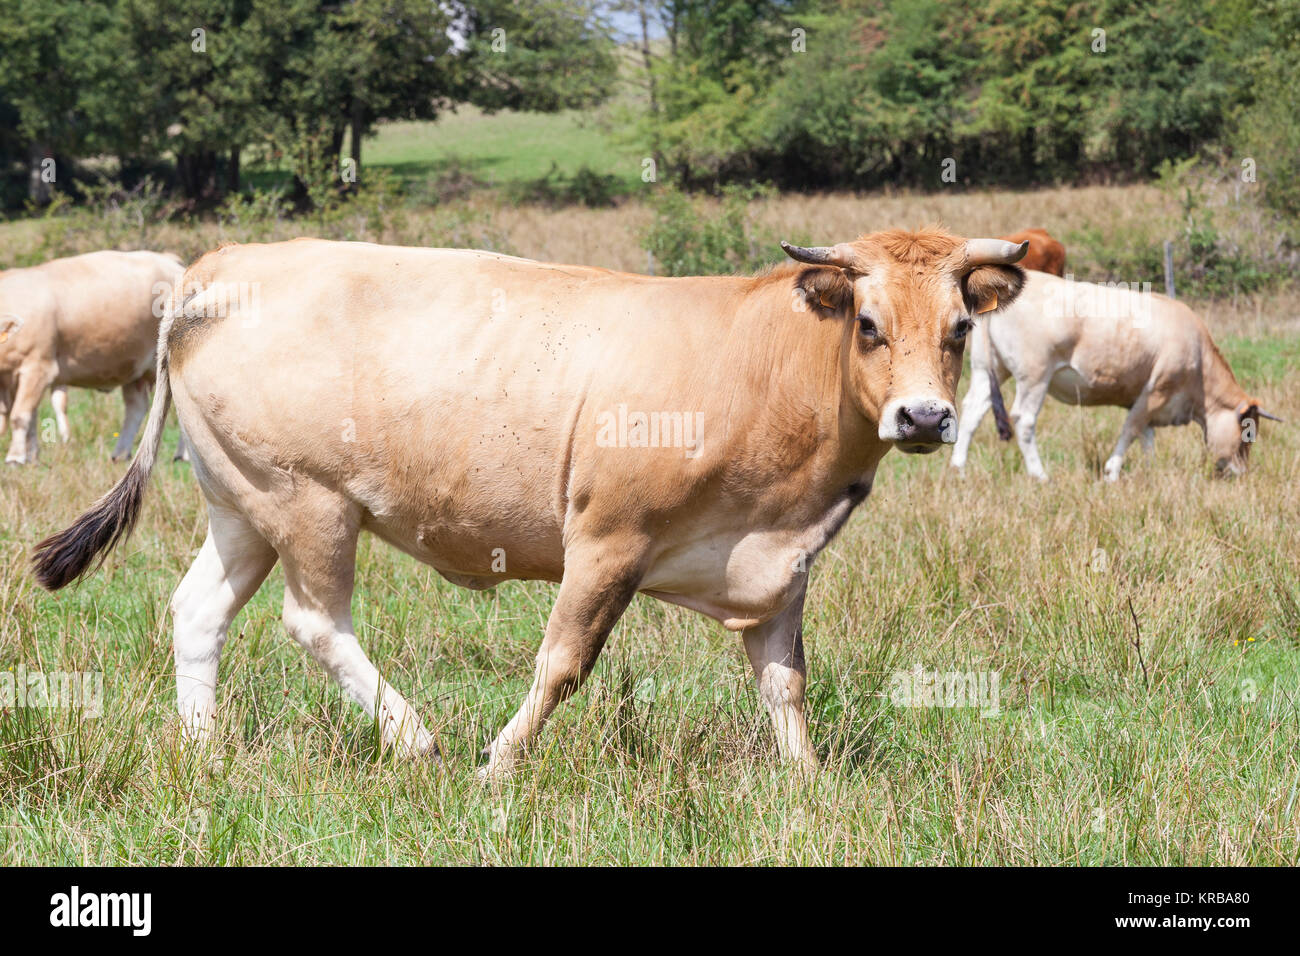 Aubrac vaca de carne en una pastura con un rebaño de vacas, ganado mirando a la cámara en un primer plano la vista lateral. Raza francés utilizado durante la gestación y la producción de carne Foto de stock